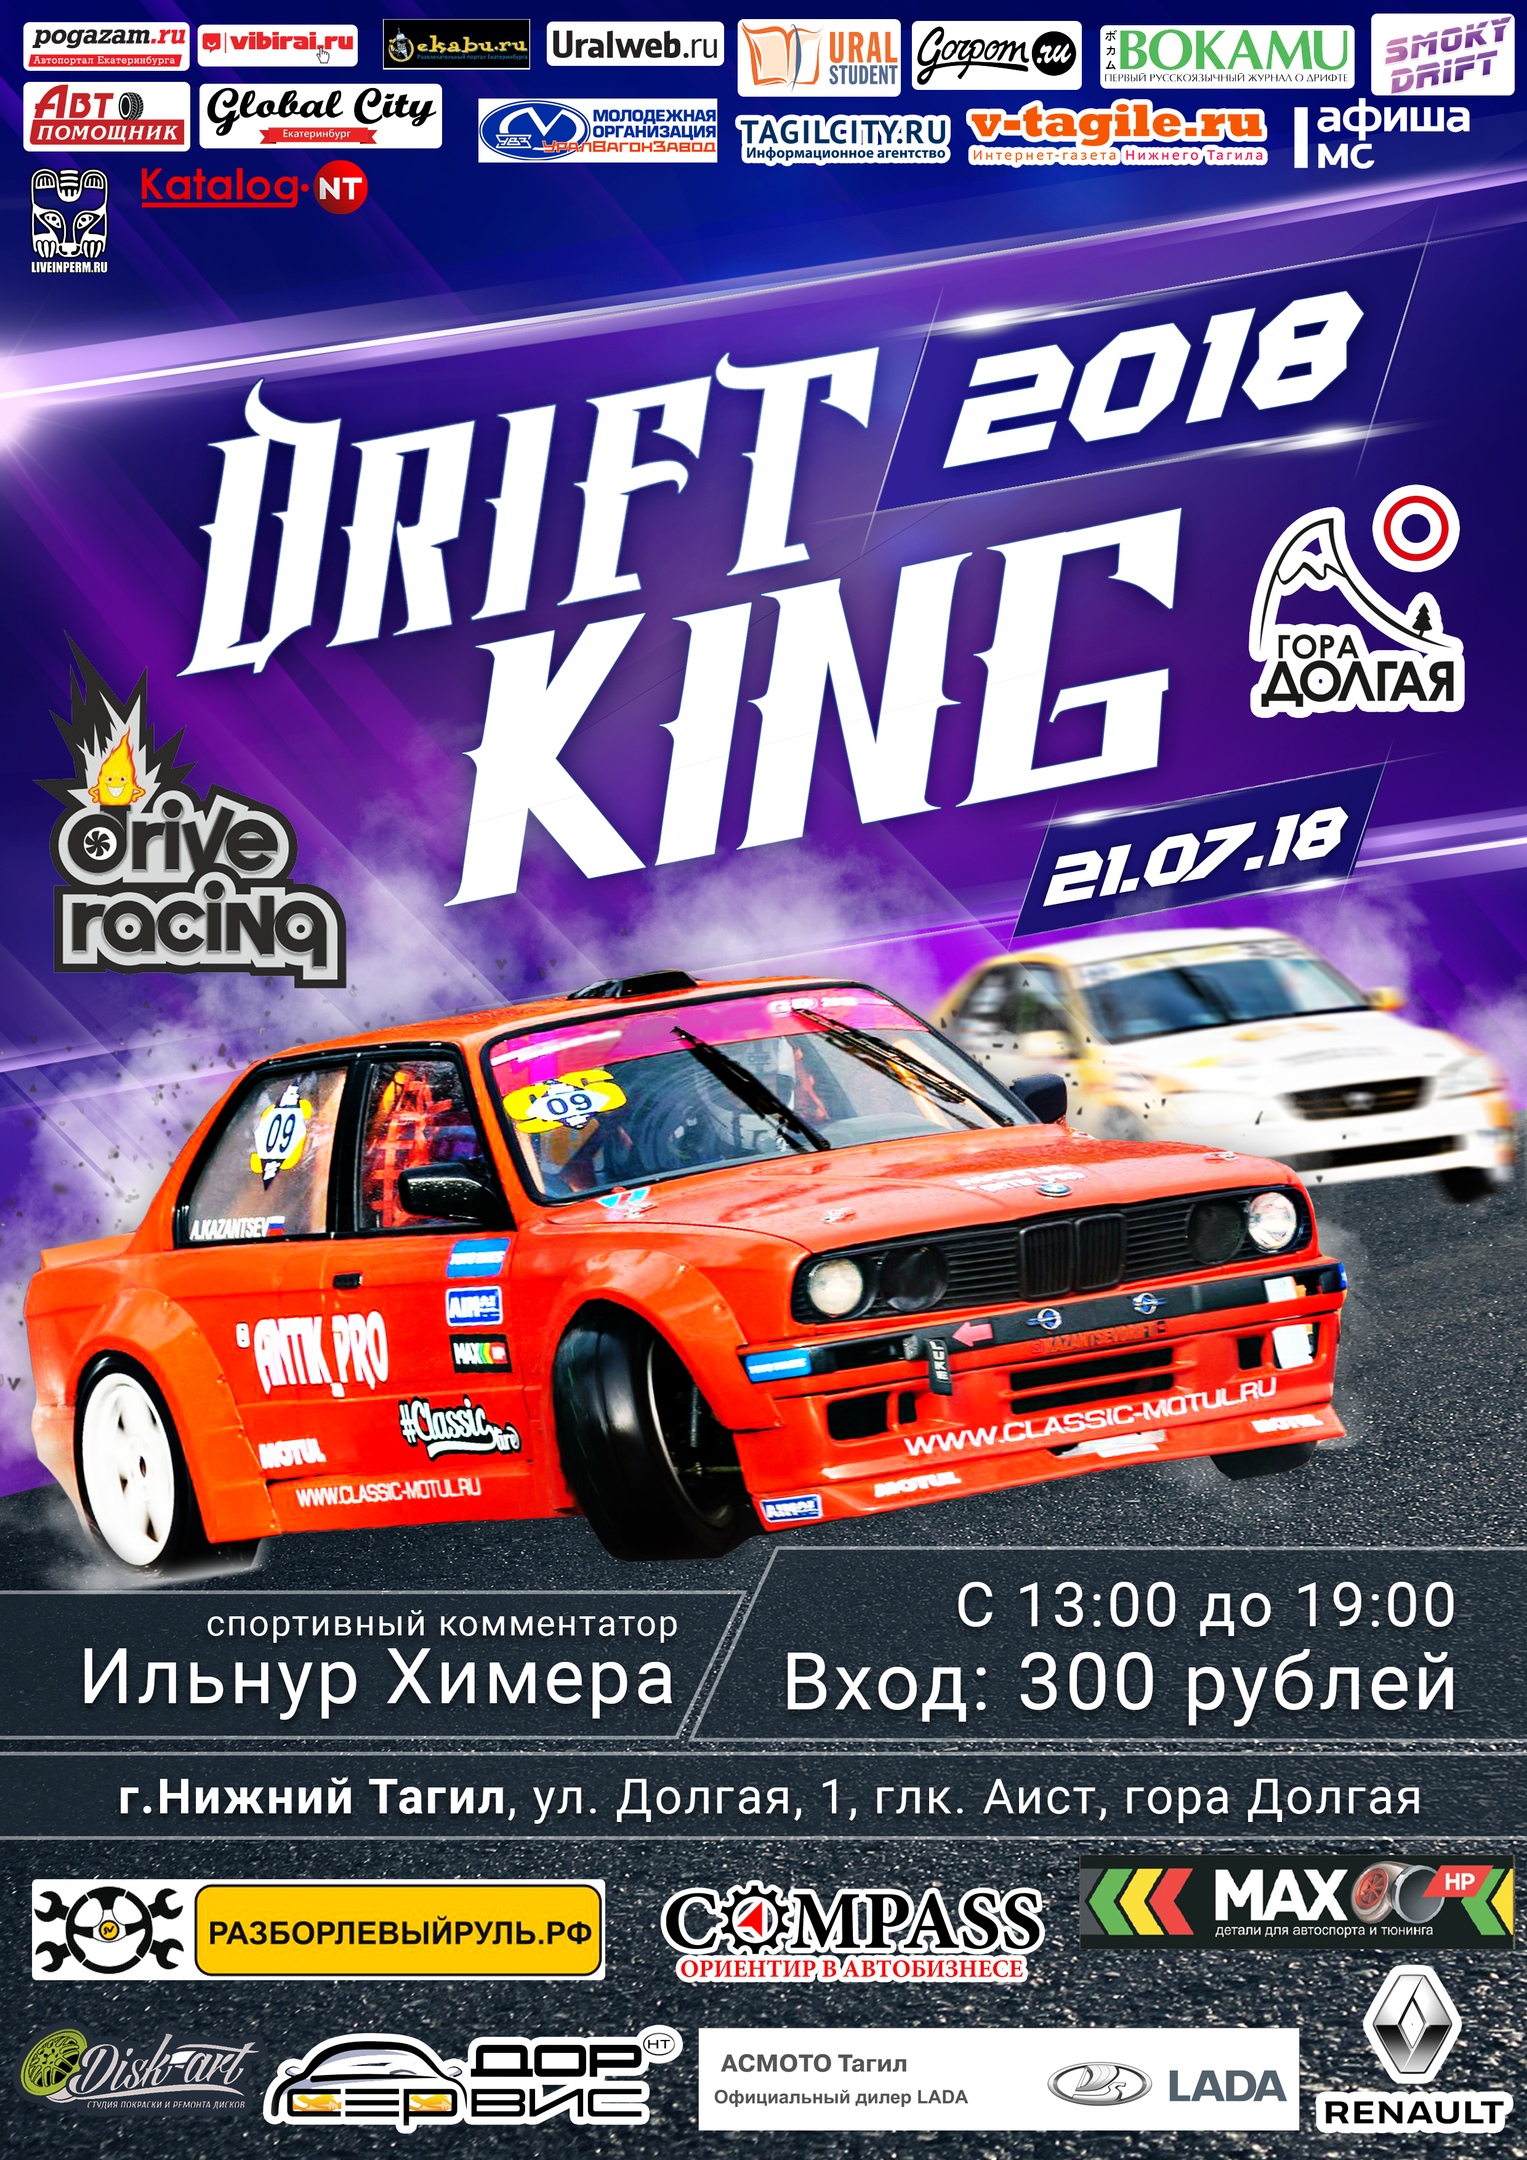 21 июля топовые пилоты Урала сразятся за титул DRIFT KING 2018!